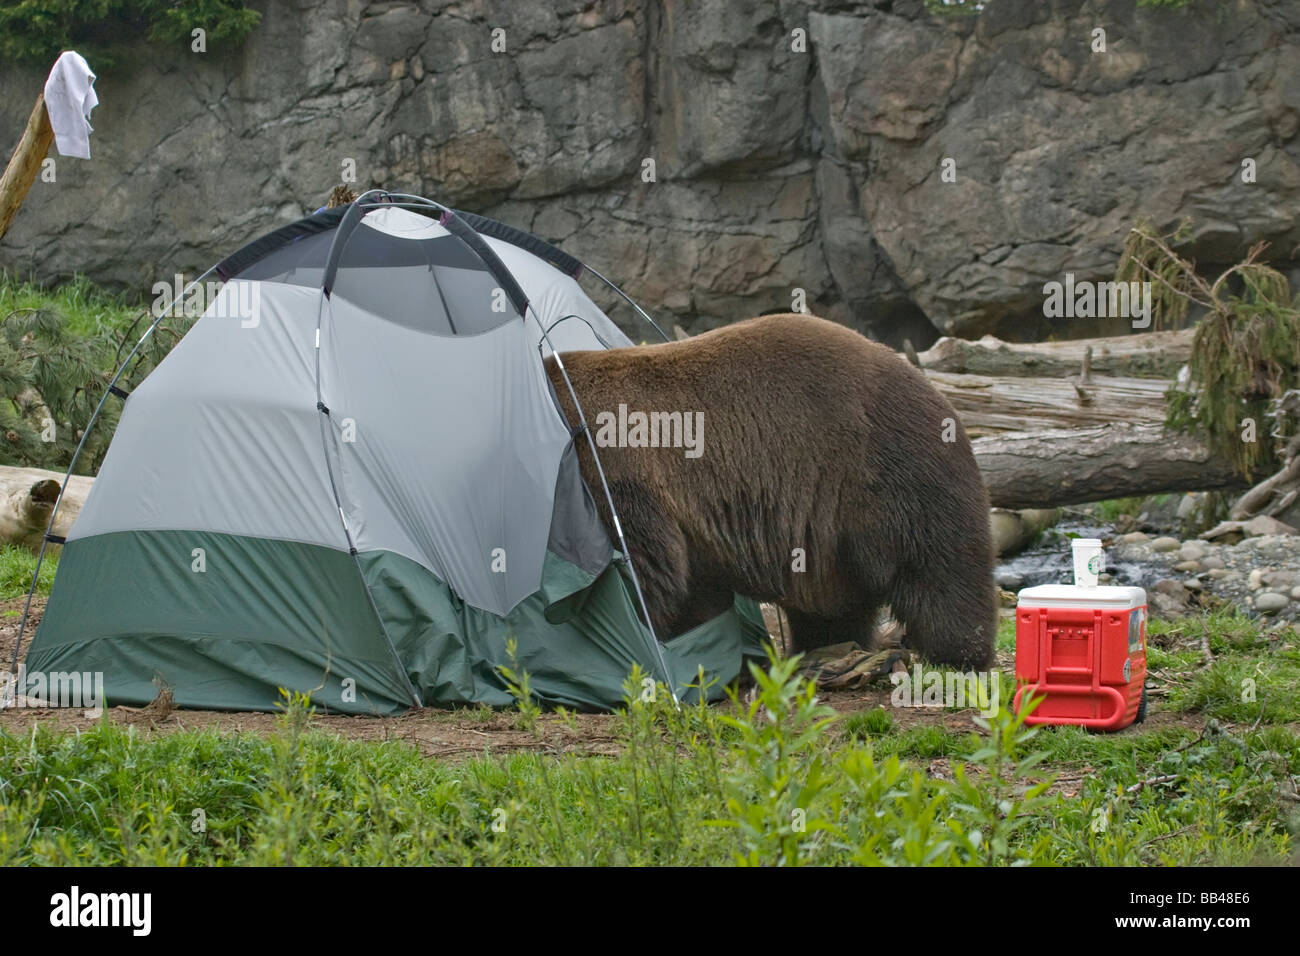 USA, Washington, Seattle, Woodland Park Zoo. Ein Braunbär, Einbruch in  einem Zelt auf einem Campingplatz Stockfotografie - Alamy